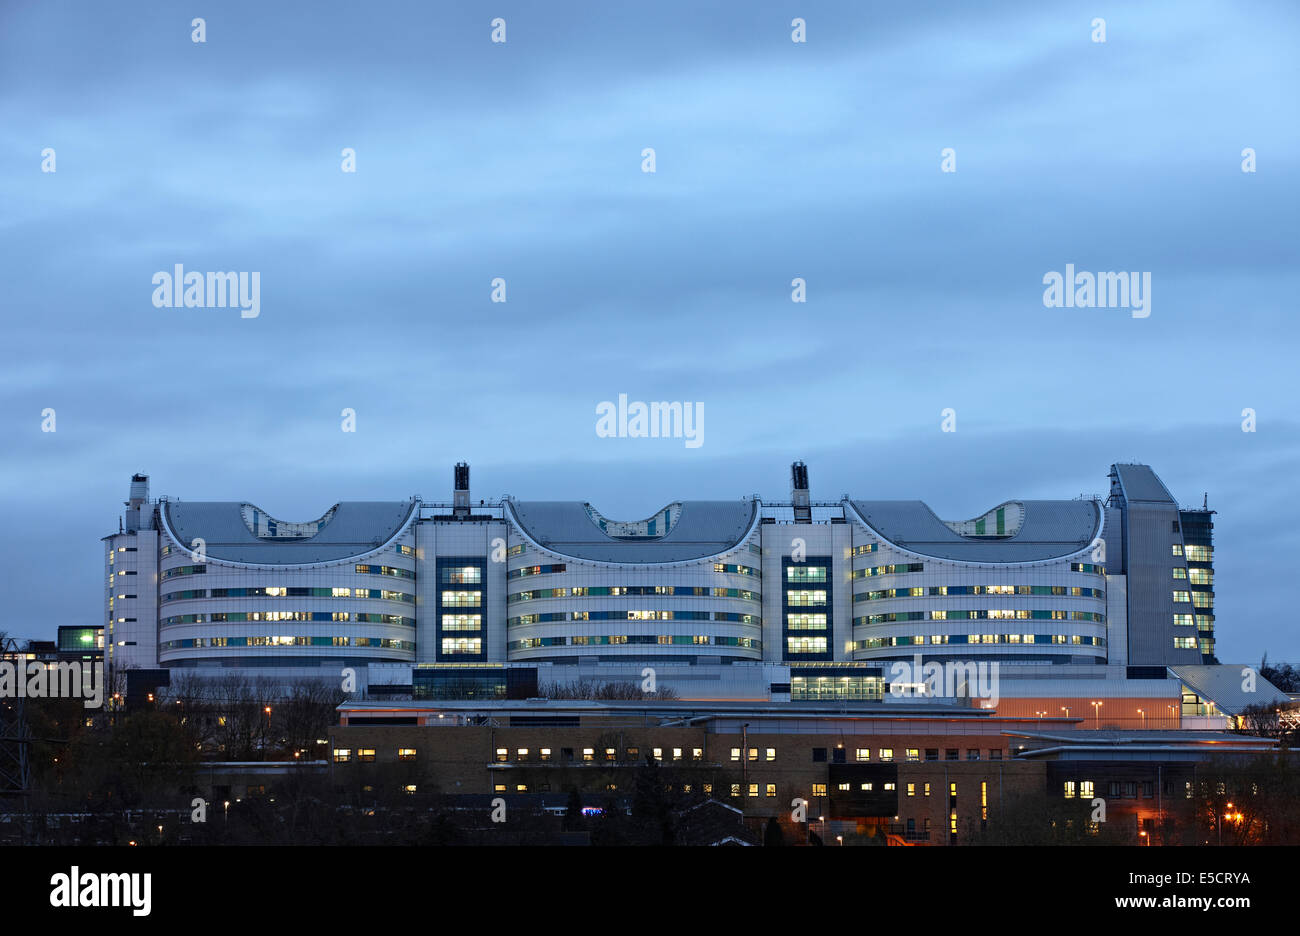 QE oder Queen Elizabeth Hospital Edgbaston Birmingham unter Public-Private-Partnership (PPP), Dämmerung Nacht Bild gebaut. Stockfoto